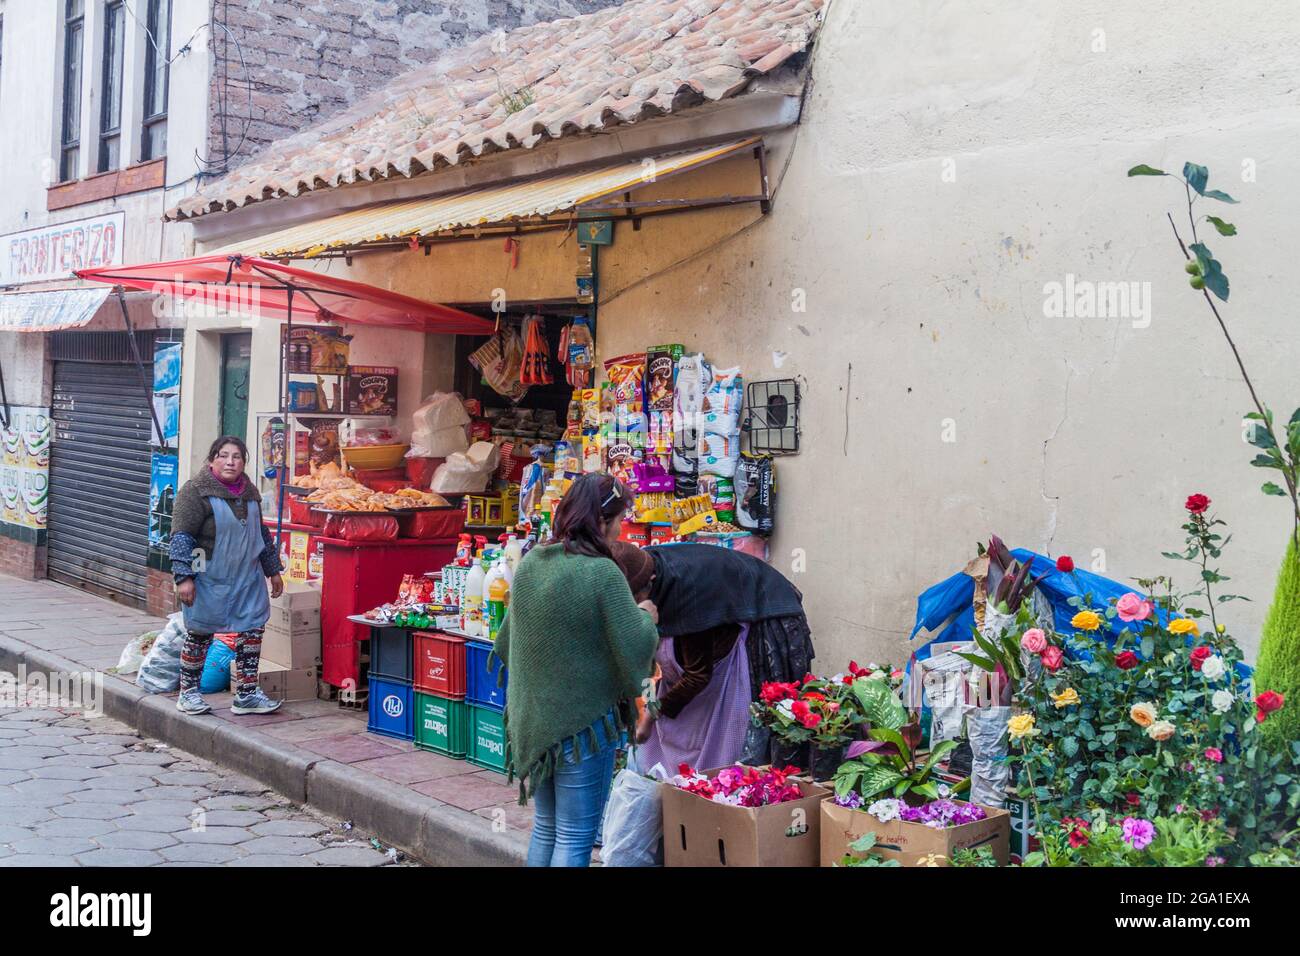 POTOSI, BOLIVIEN - 18. APRIL 2015: Menschen um ein kleines lokales Geschäft in Potosi, Bolivien. Stockfoto